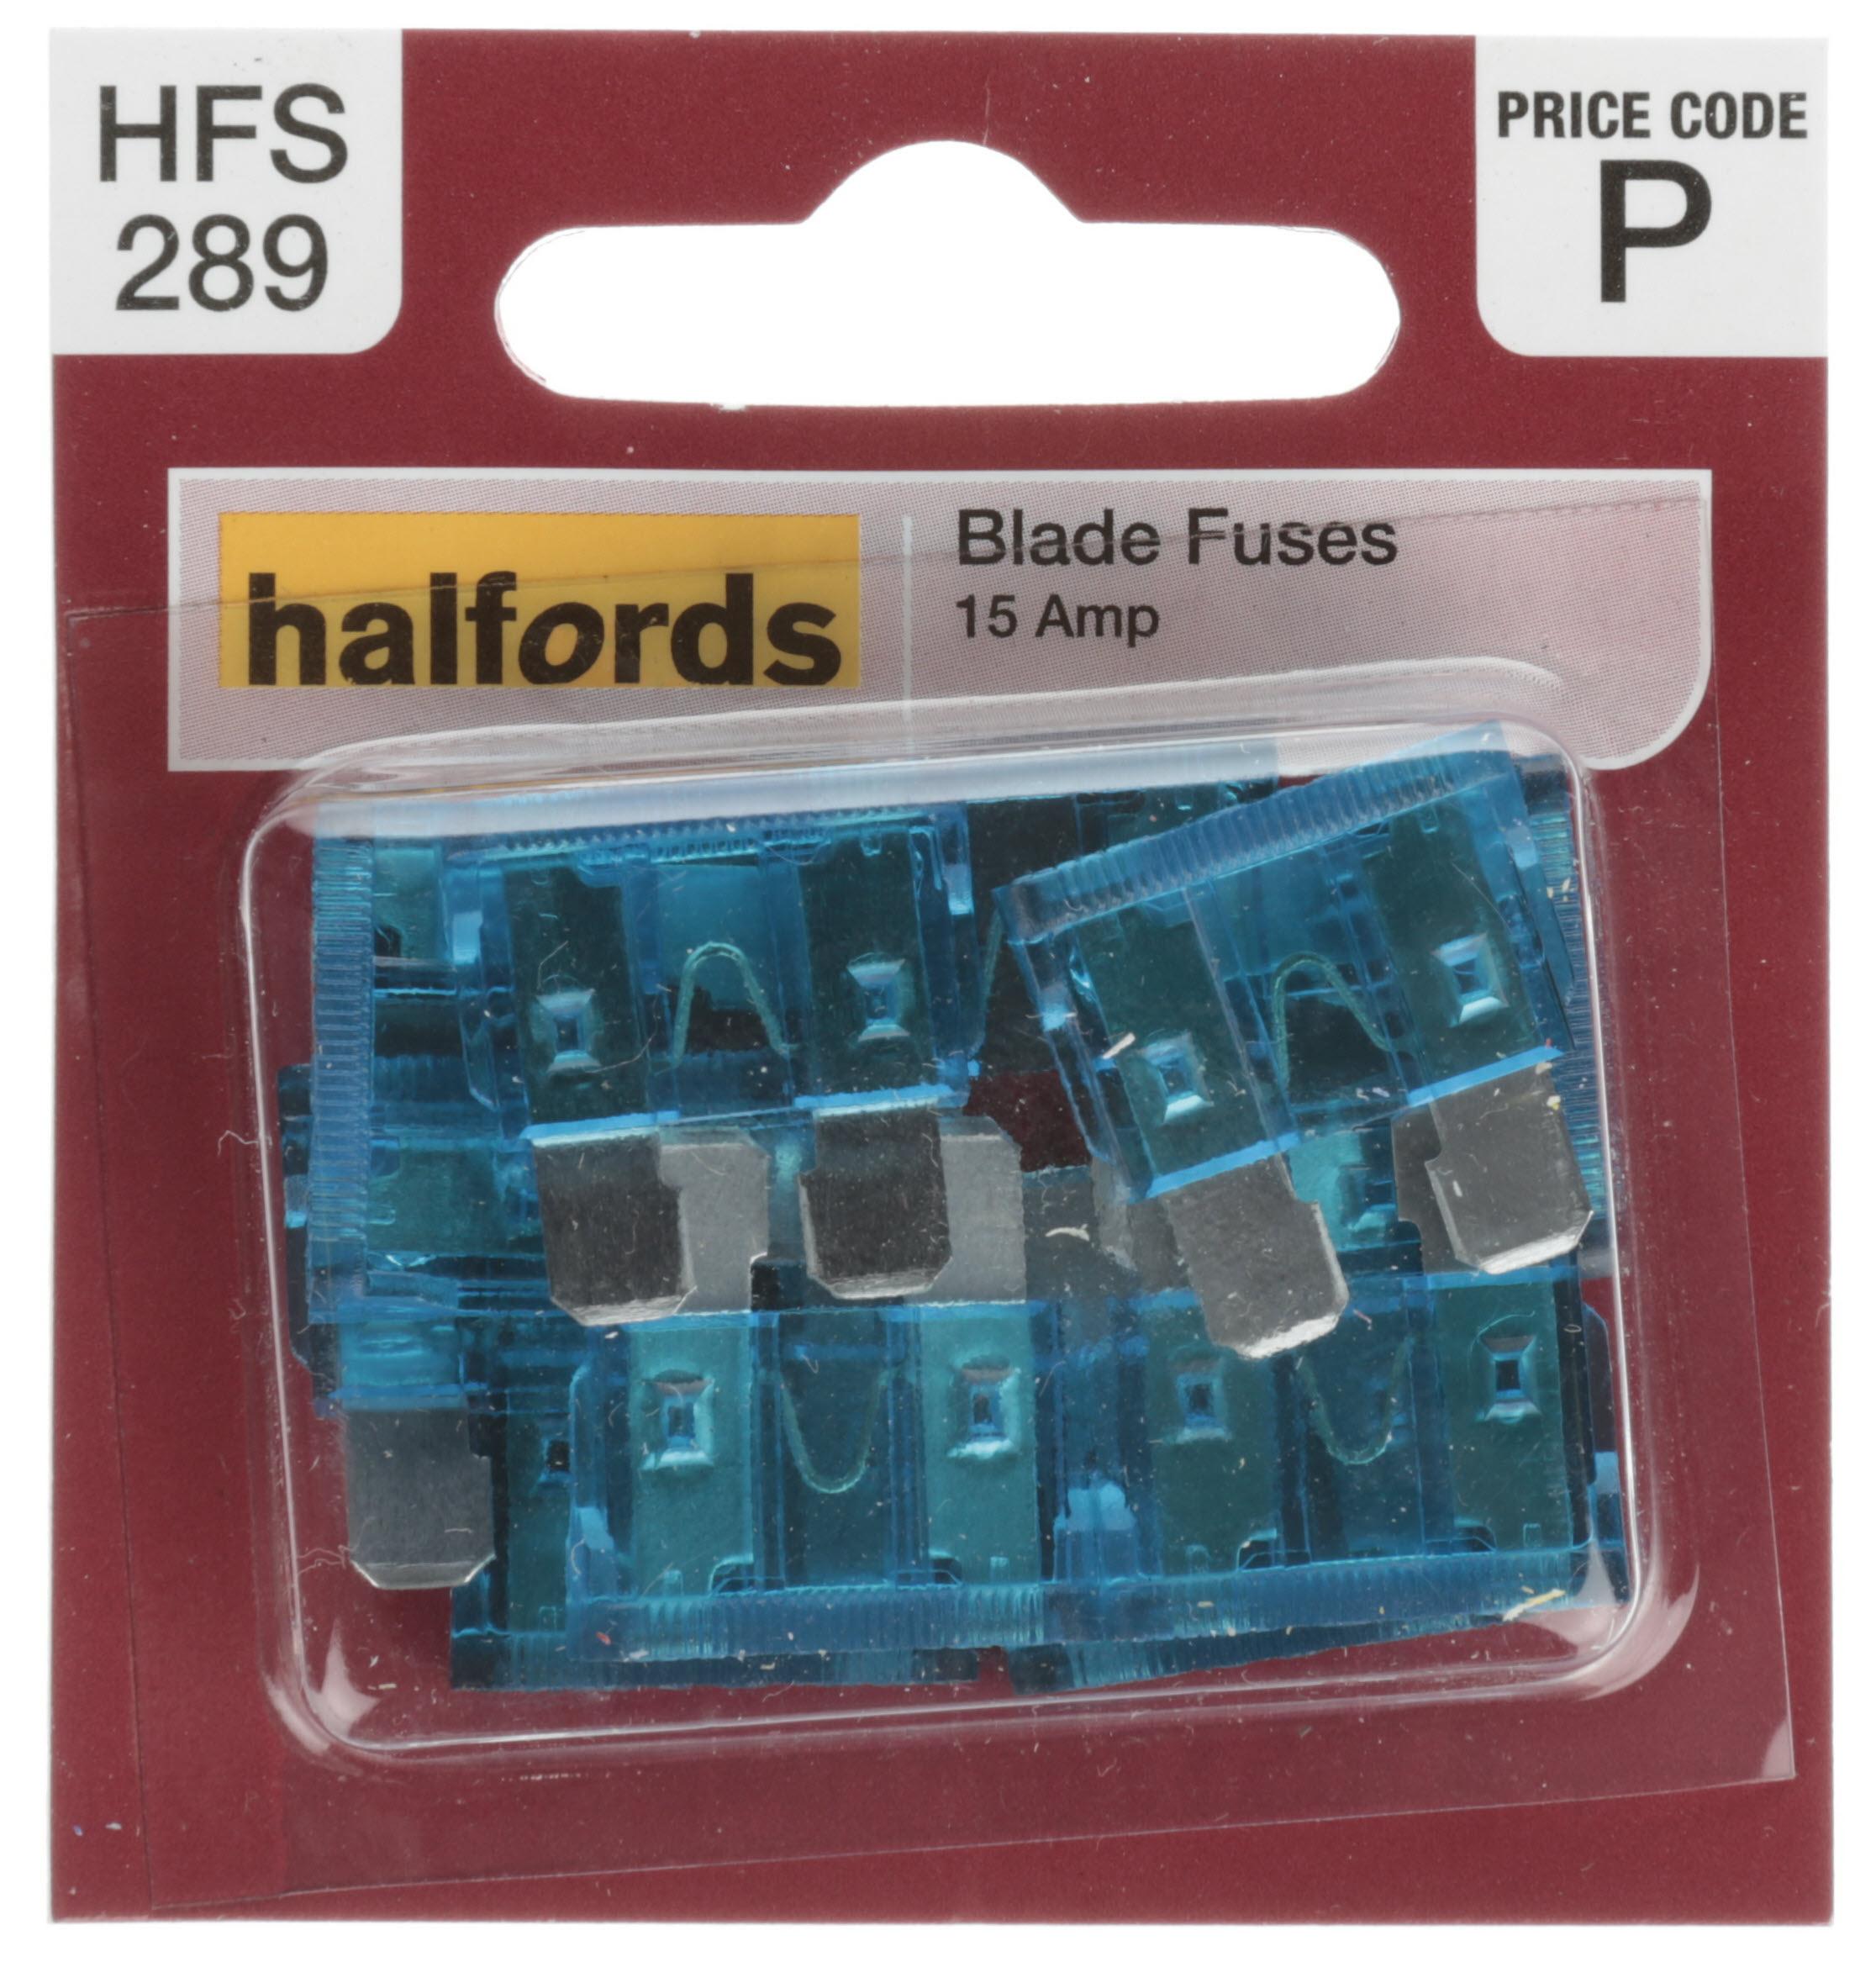 Halfords Blade Fuses 15 Amp (Hfs289)